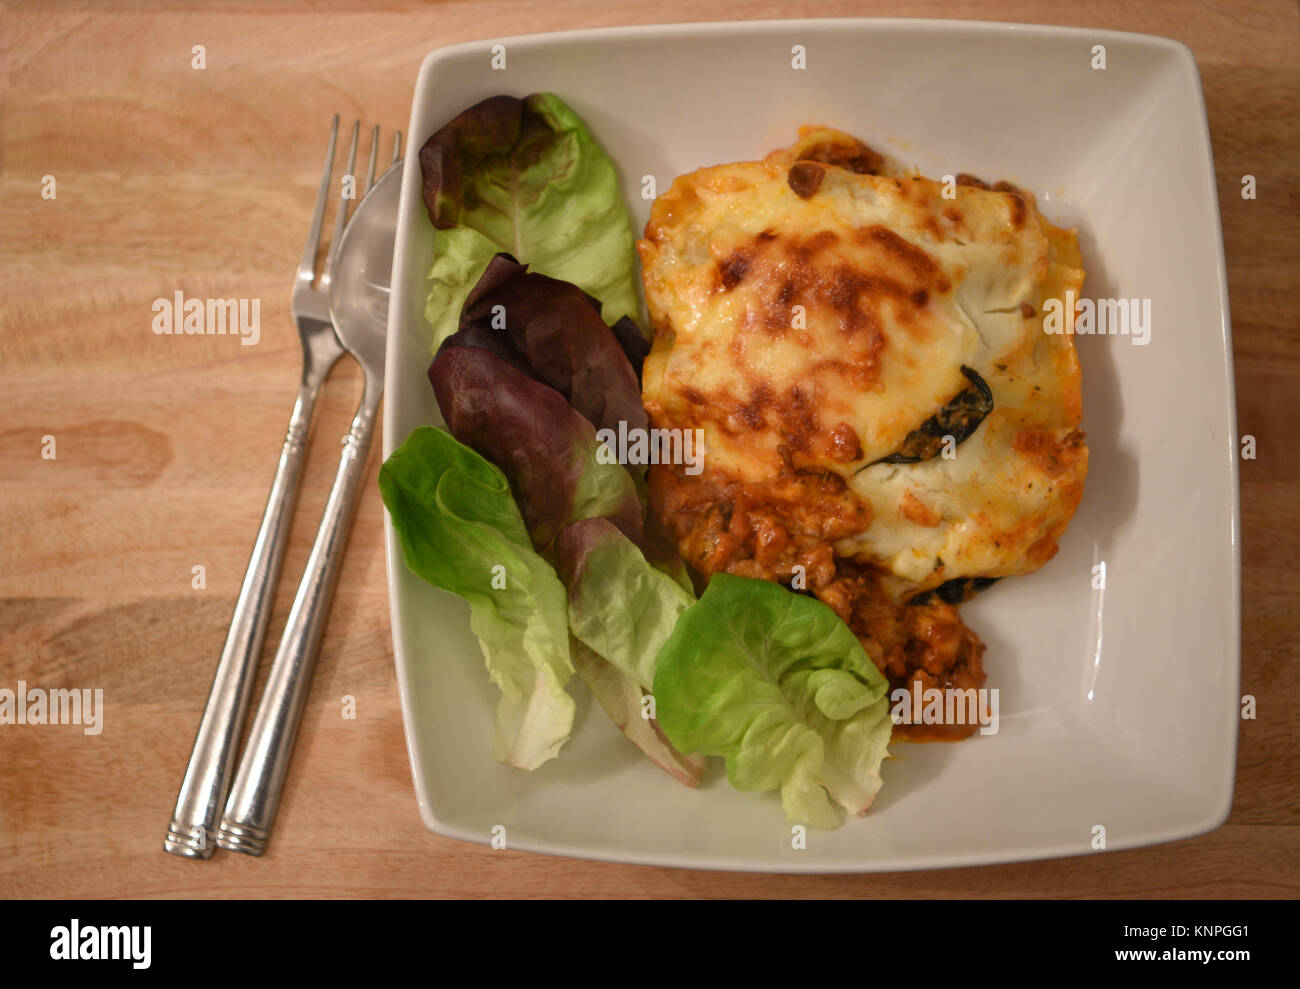 Cibo fotografia immagine di una porzione di una deliziosa casa calda cuocere le lasagne con foglia verde insalata in piatto bianco con posate e un background in legno Foto Stock